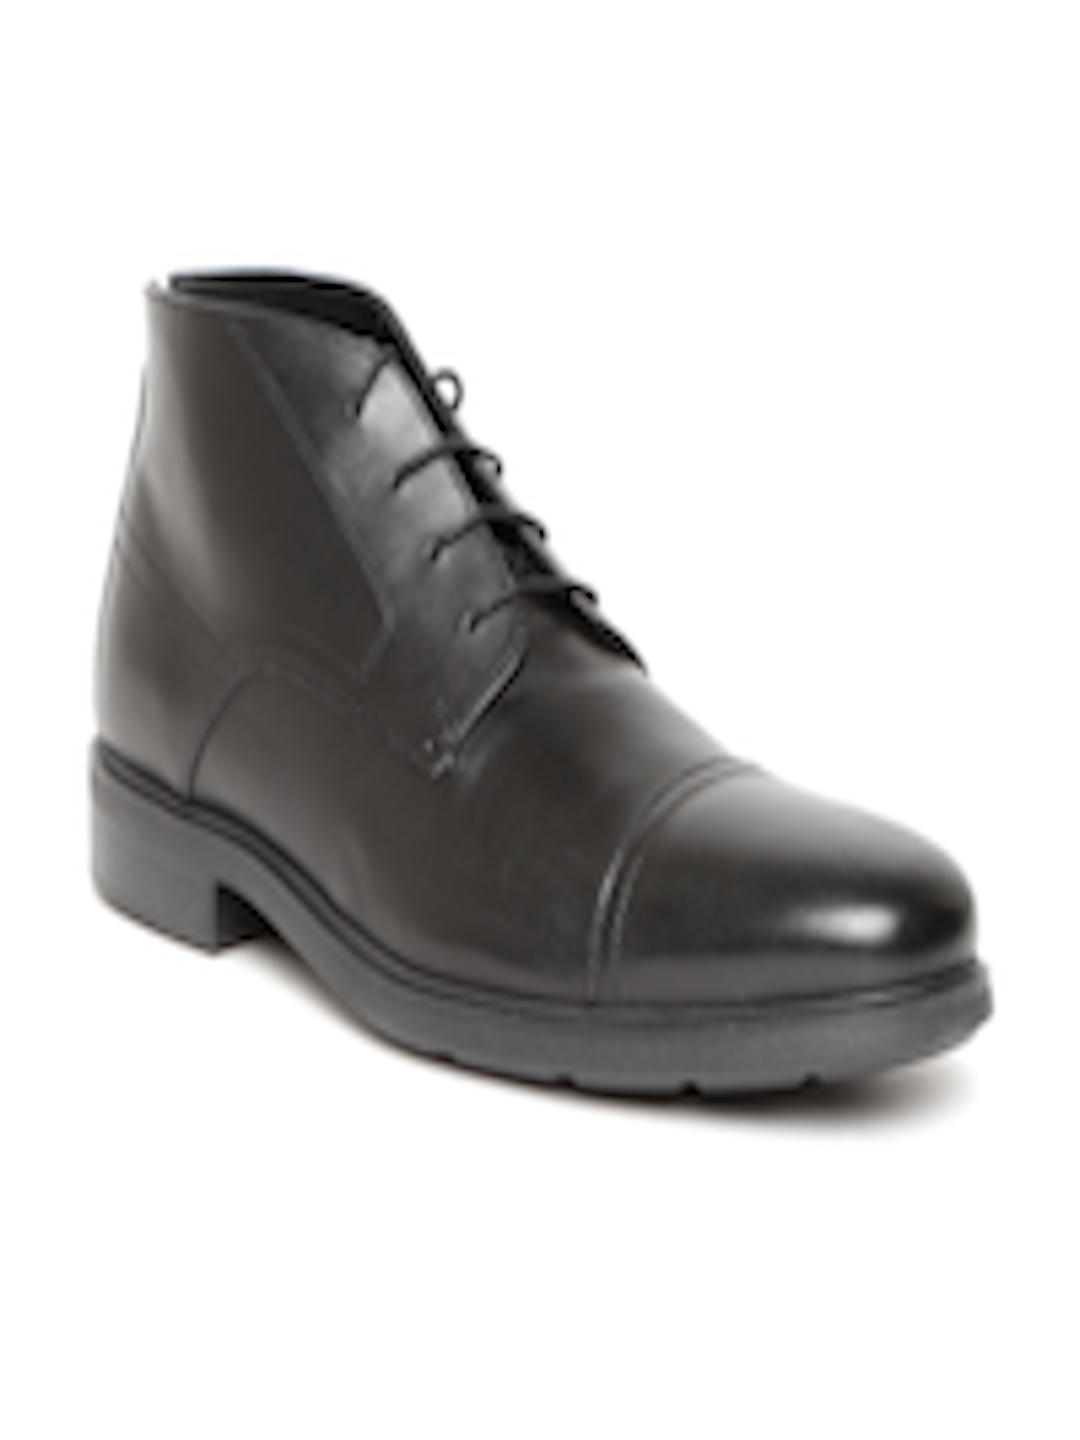 Buy Geox Men Black Leather Mid Top Formal Derbys - Formal Shoes for Men ...